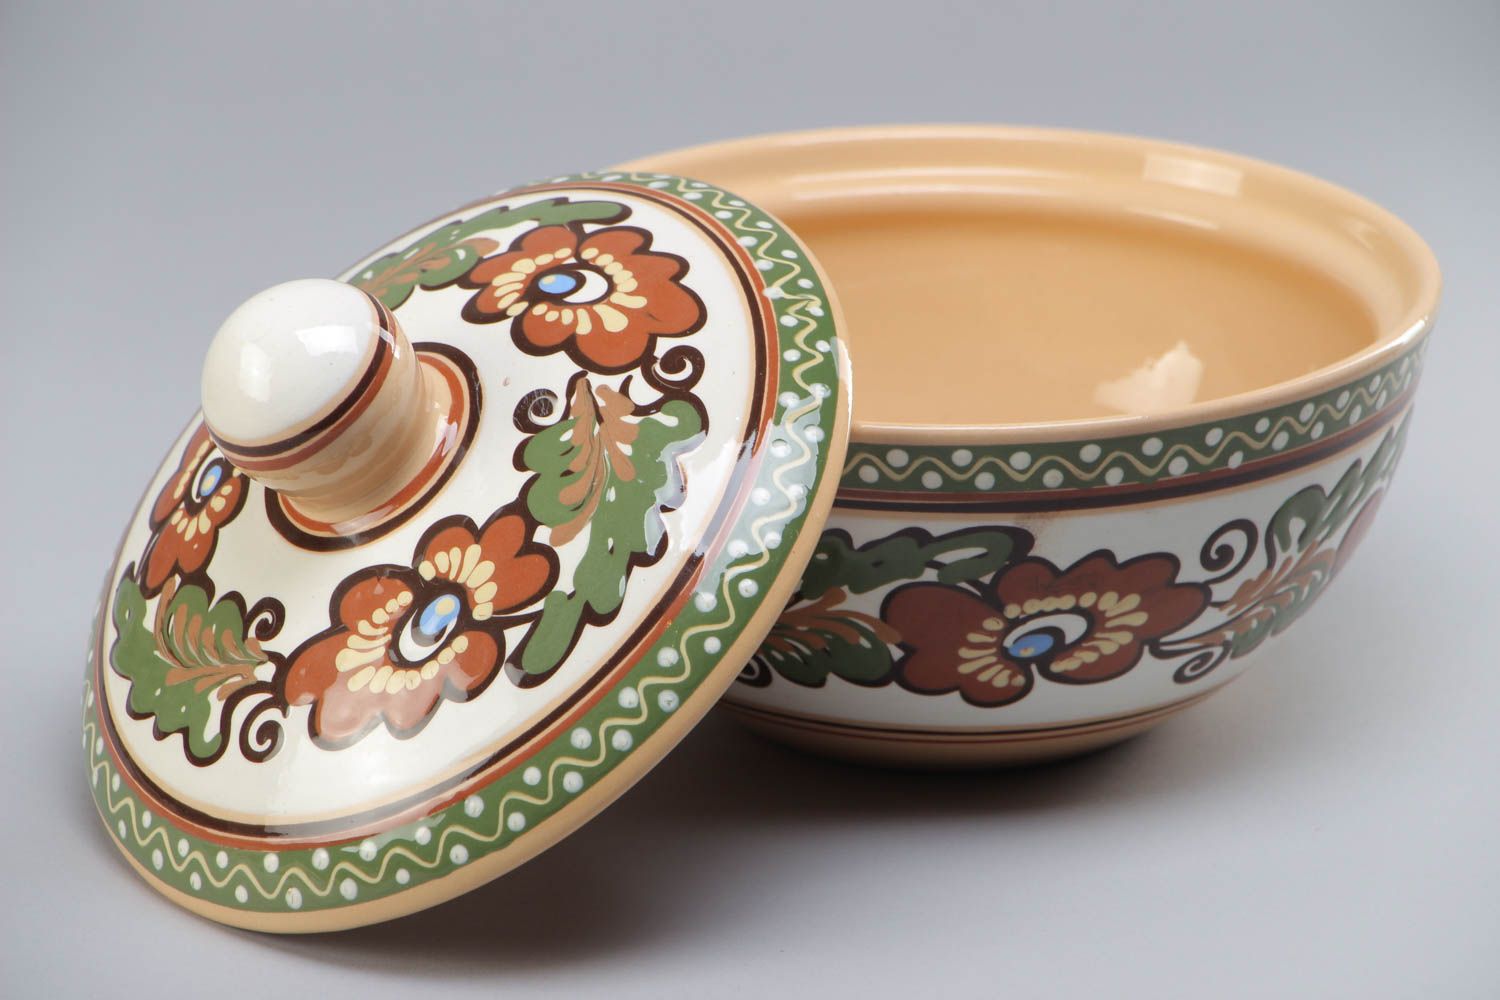 Глиняная супница с крышкой расписанная глазурью керамическая посуда ручной работы фото 2